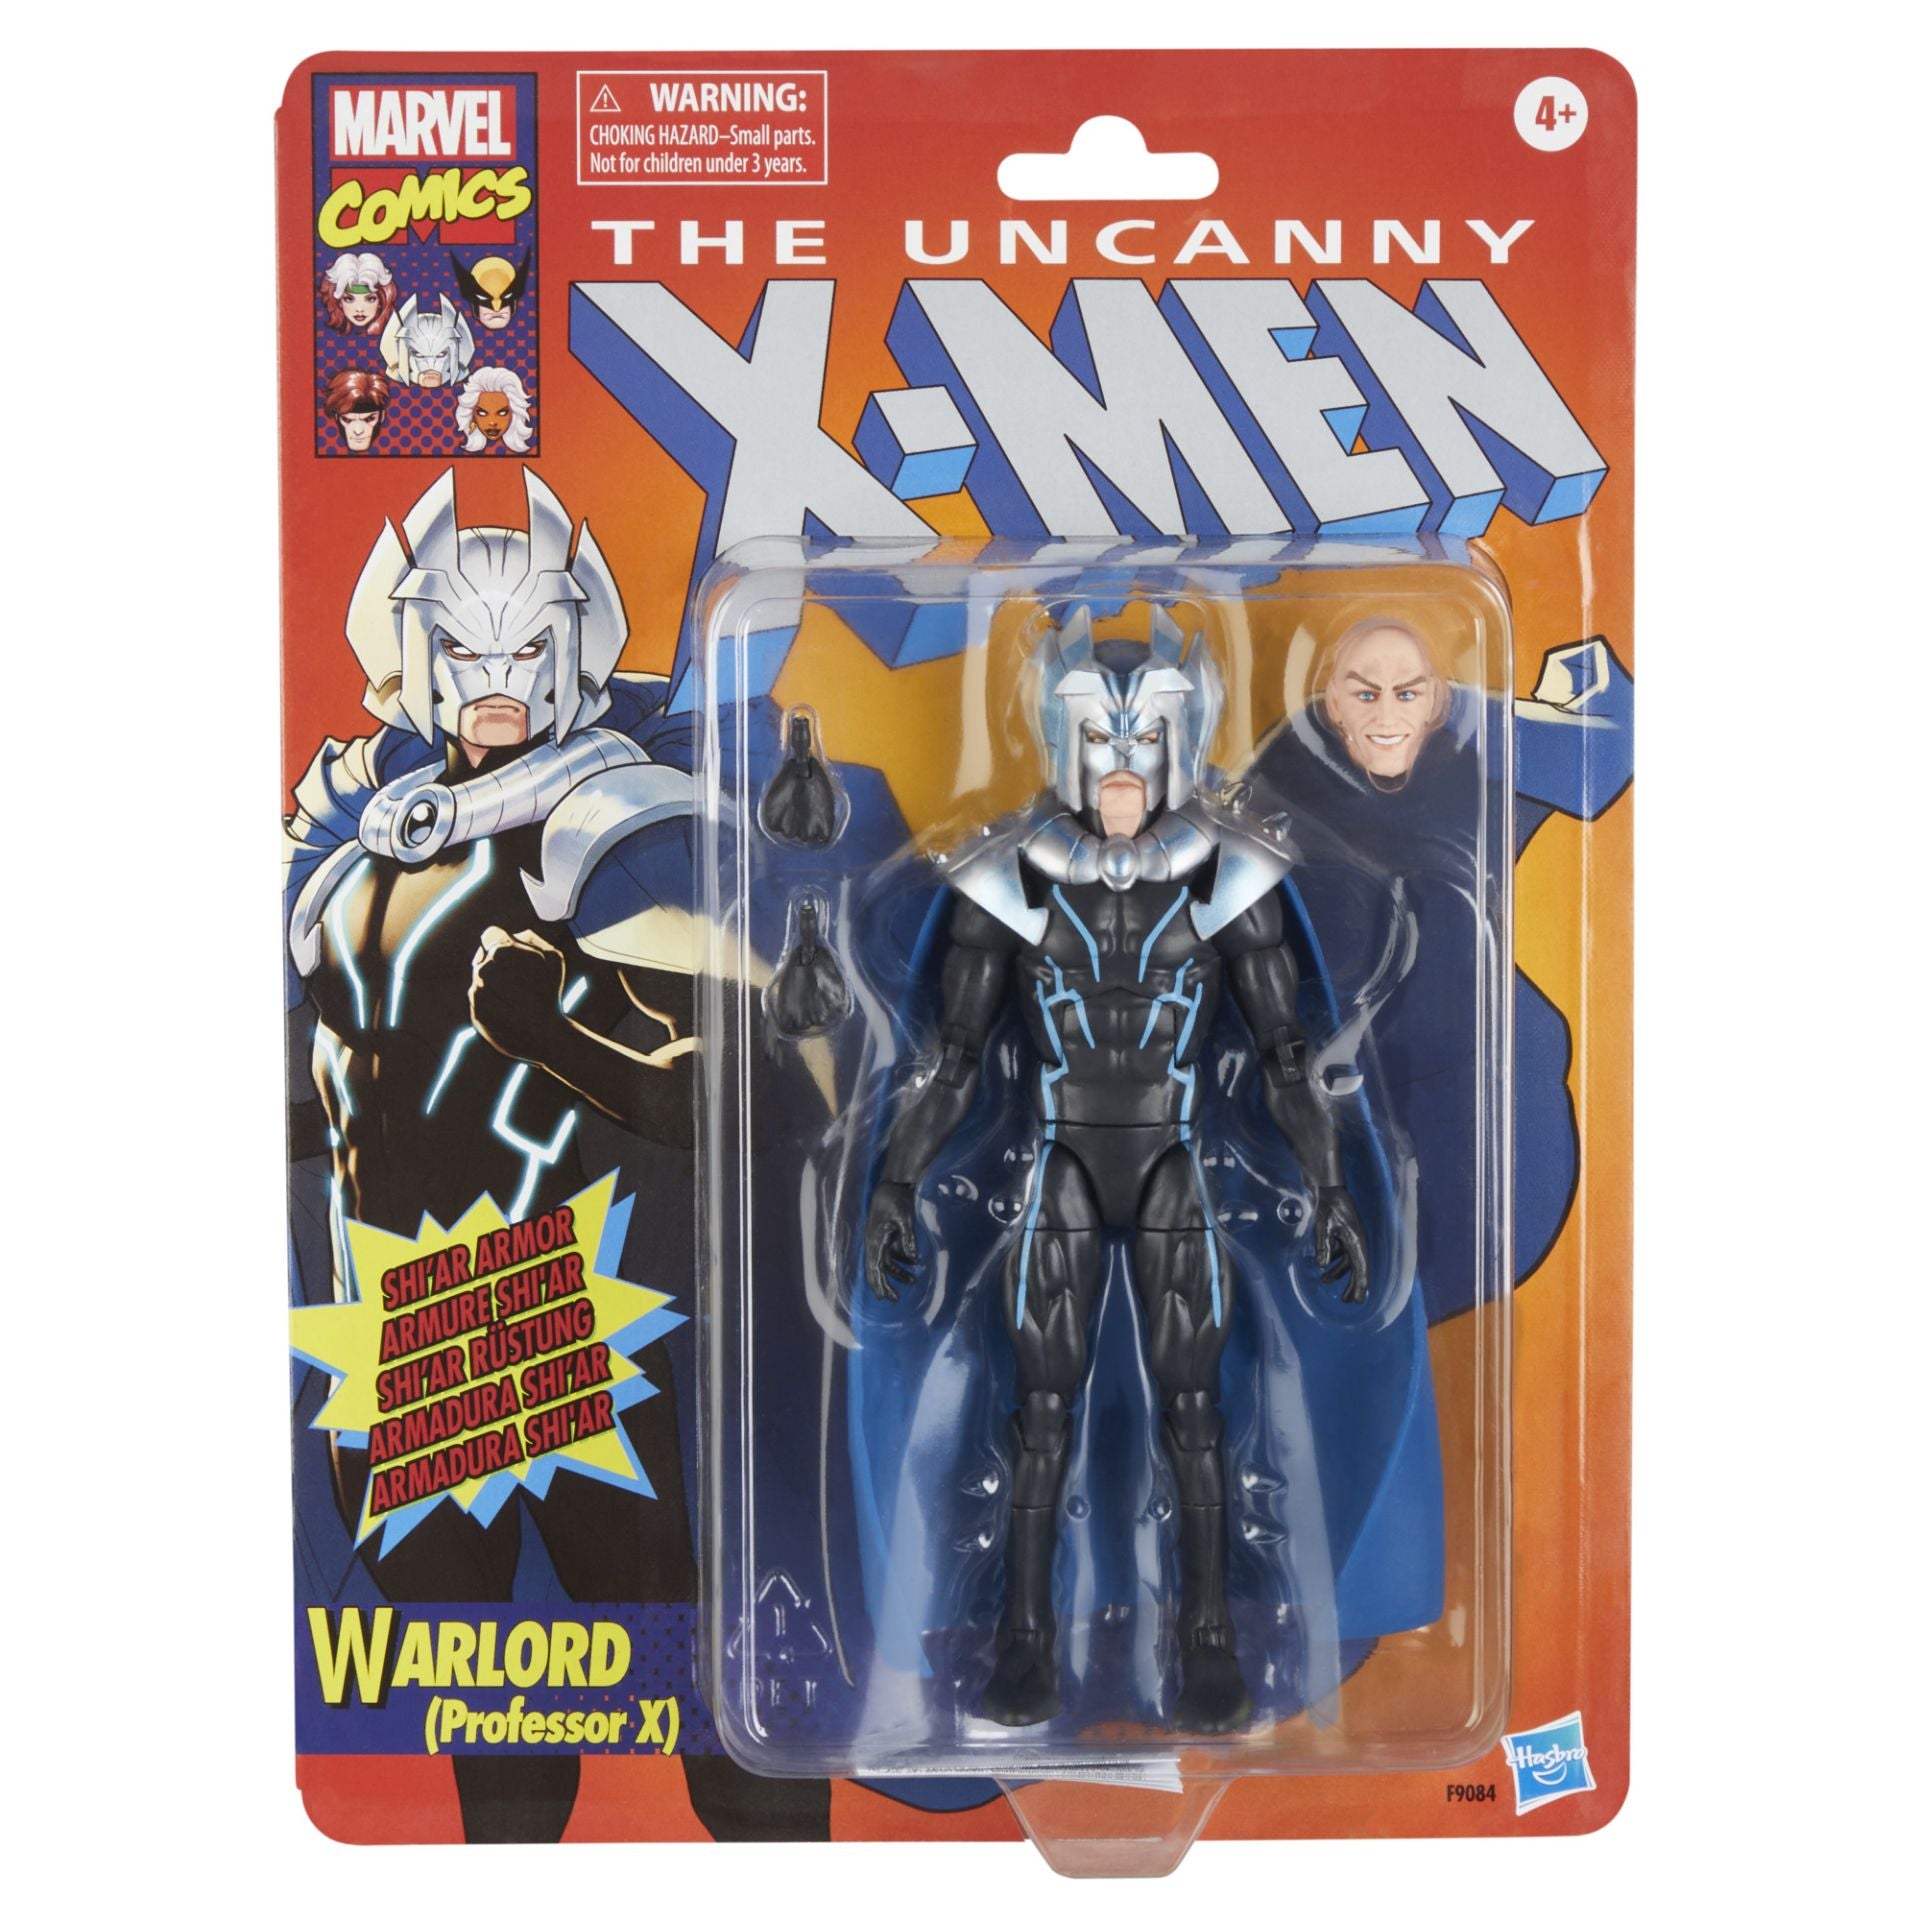 Marvel Legends Warlord Professor X 6" Uncanny X-Men Comics